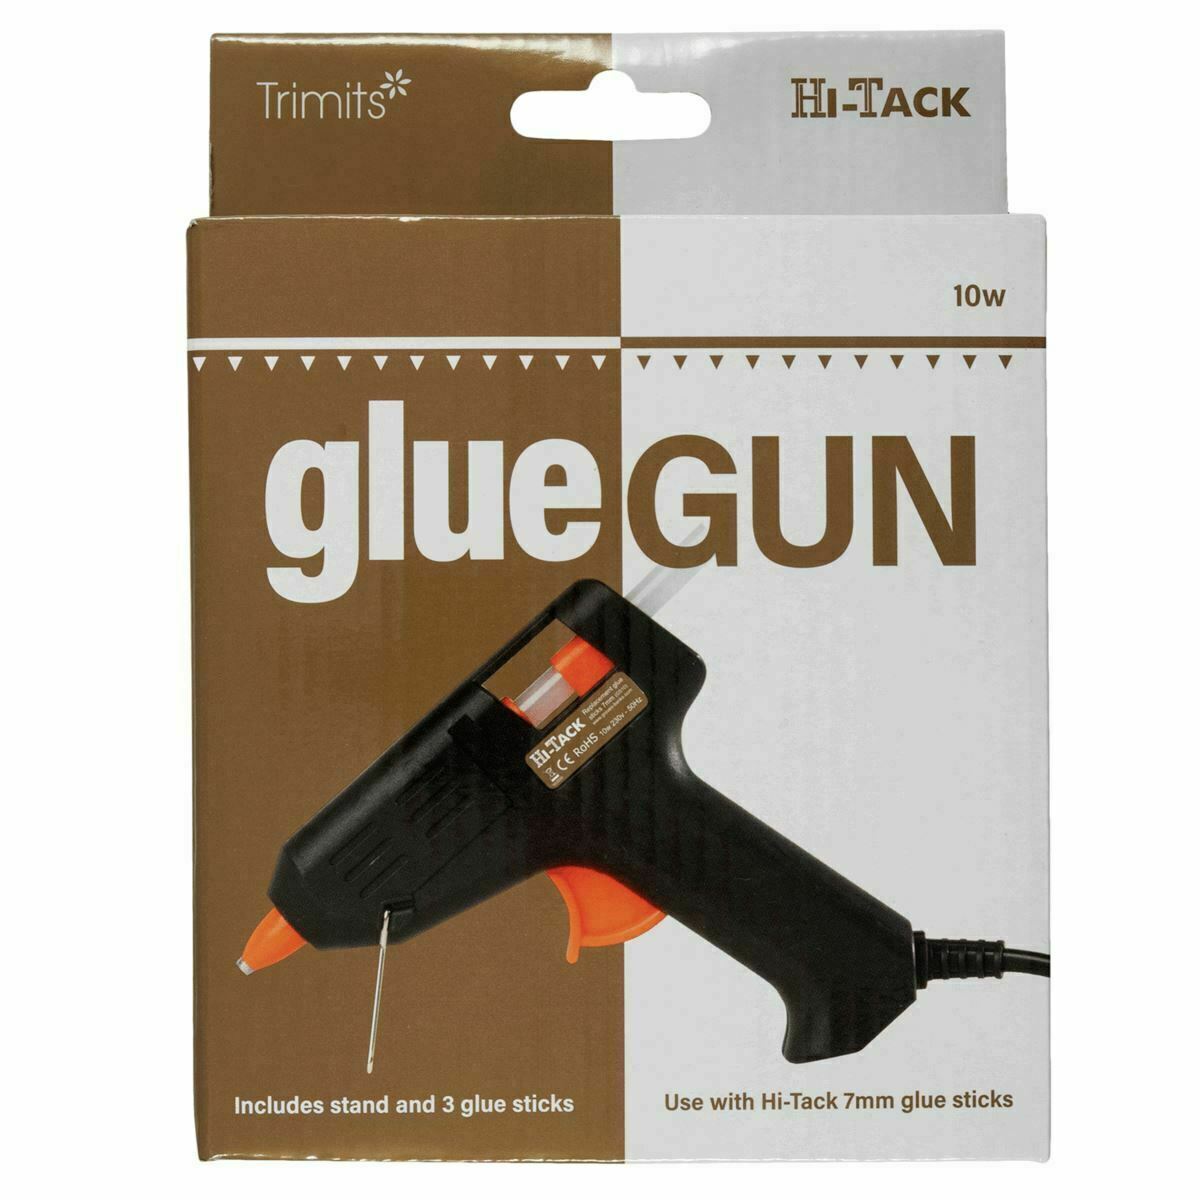 Trimits 5 ☆ popular Hi-Tack Glue Gun MG100 Mini 10w sticks glue + H OFFicial 3x stand